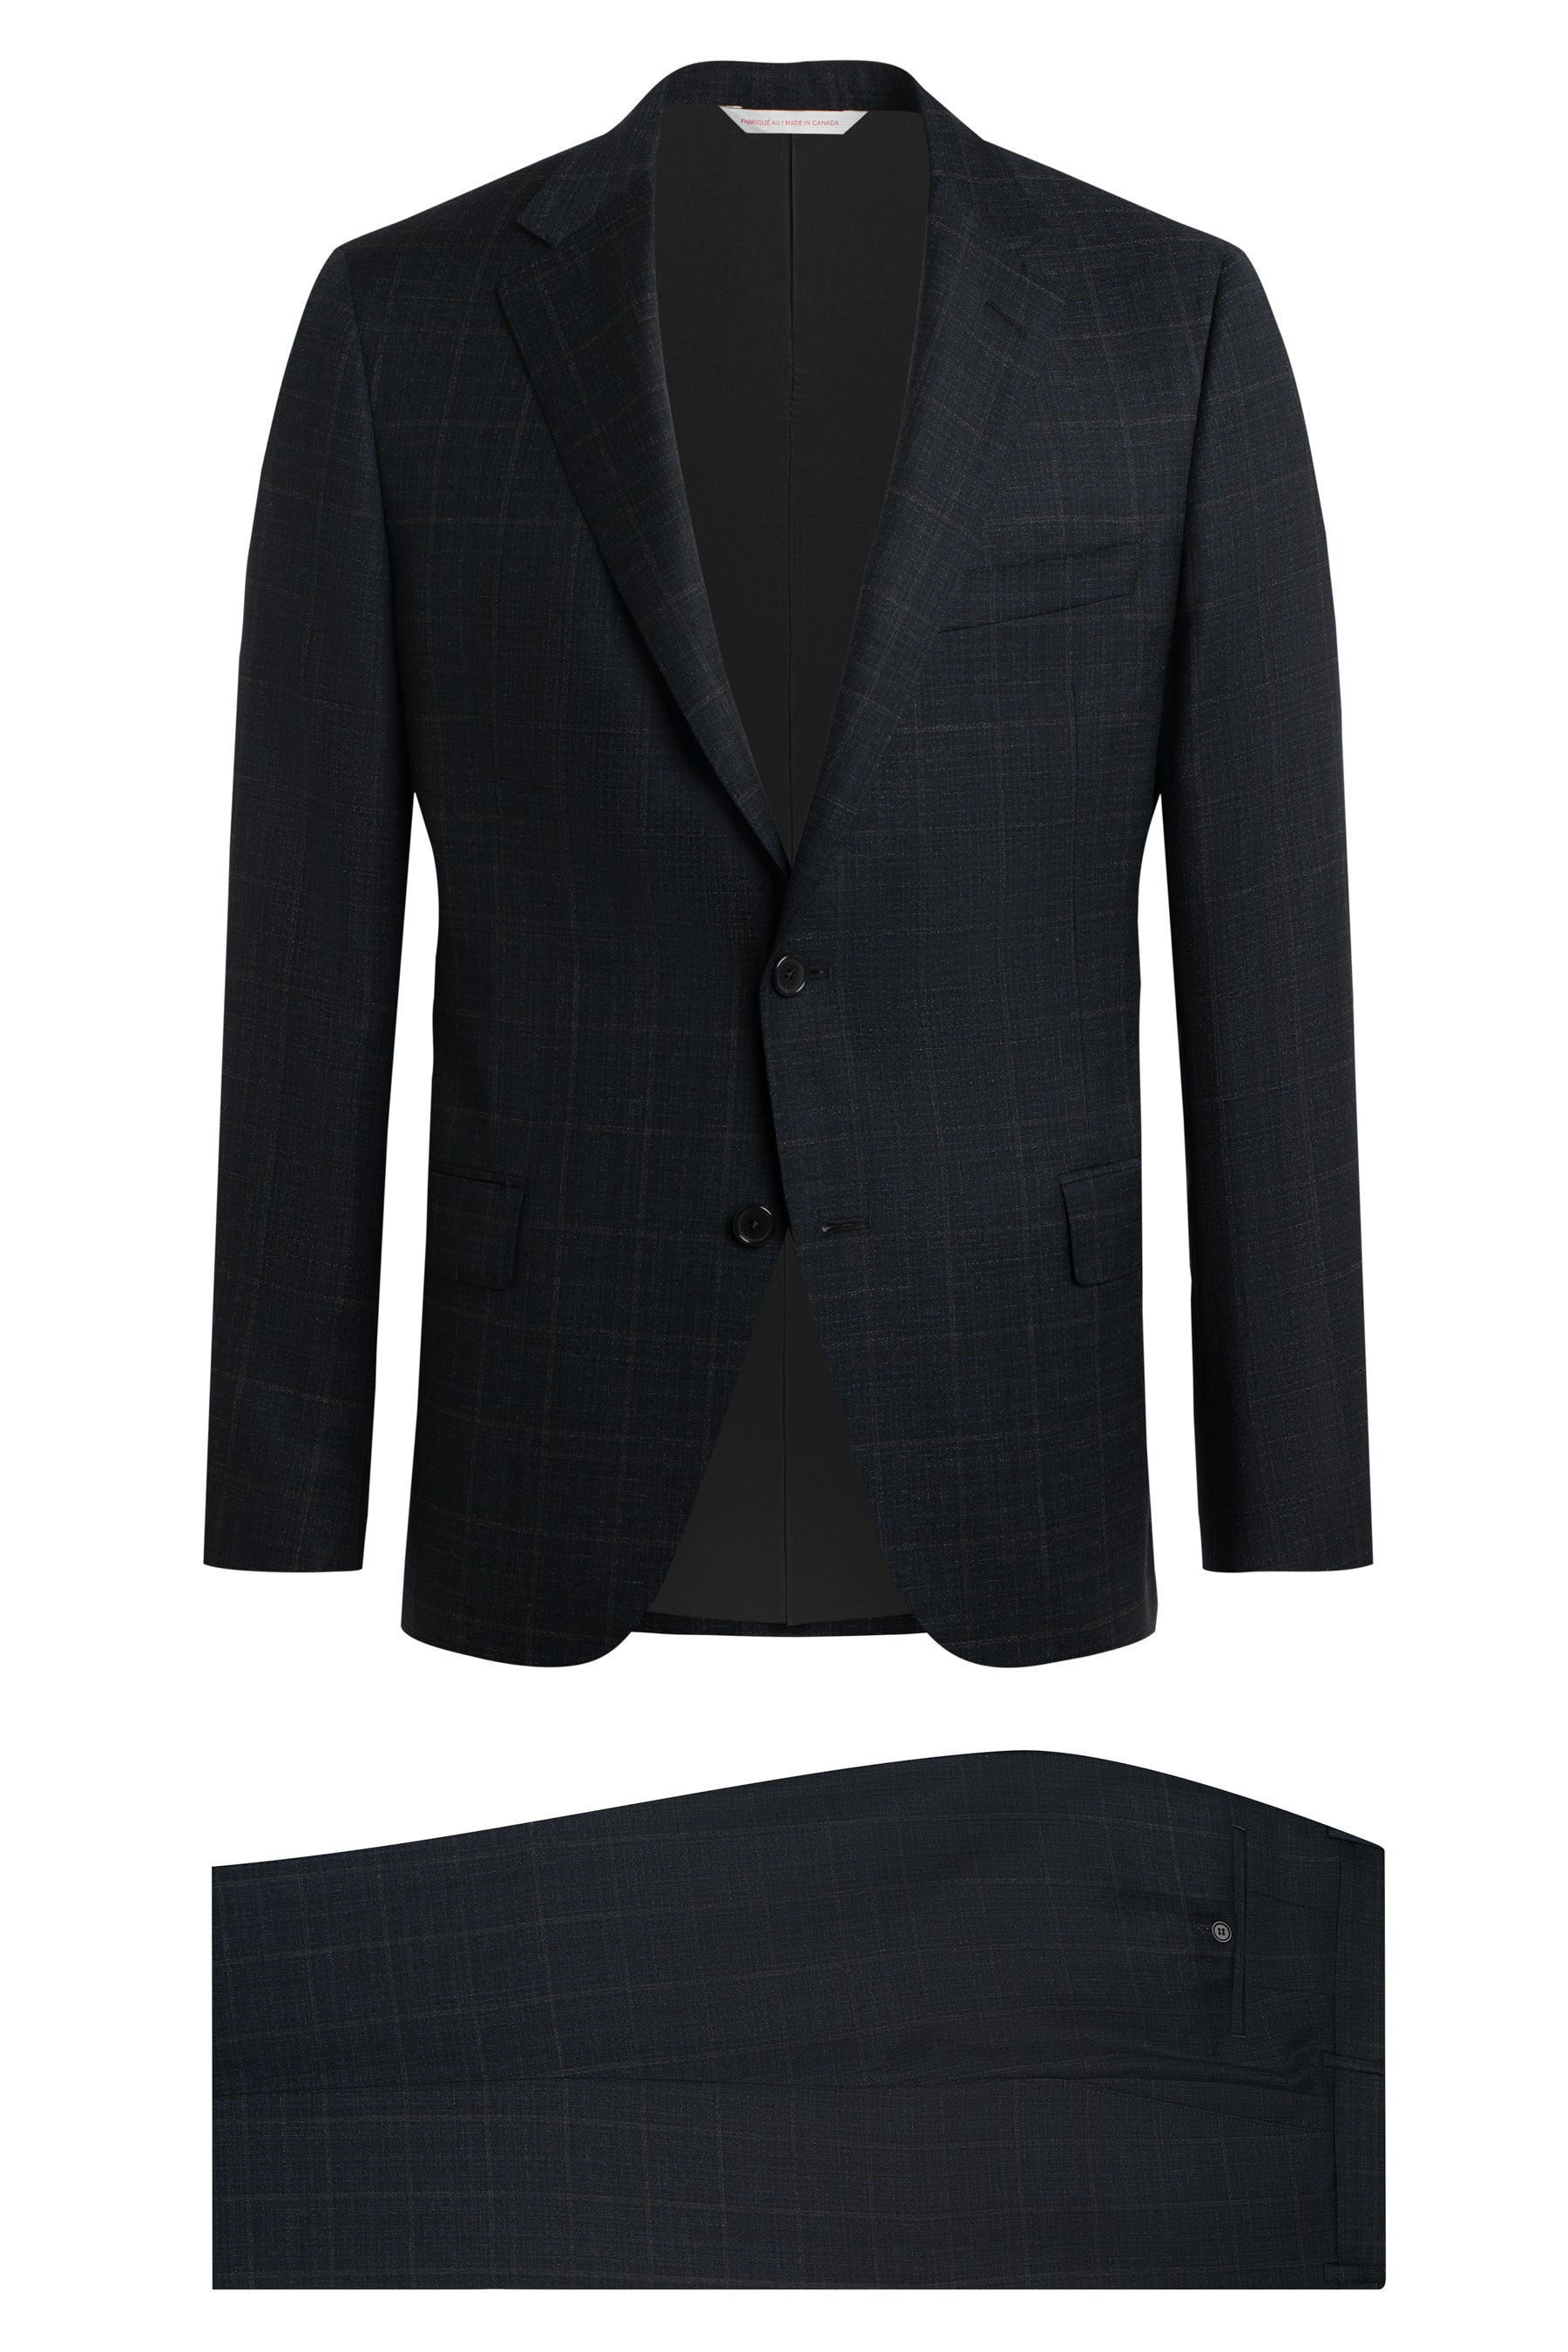 Mens Coat Suits, Buy Mens Coat Pant Suit Online, Latest coat suits for men  | G3+Fashion